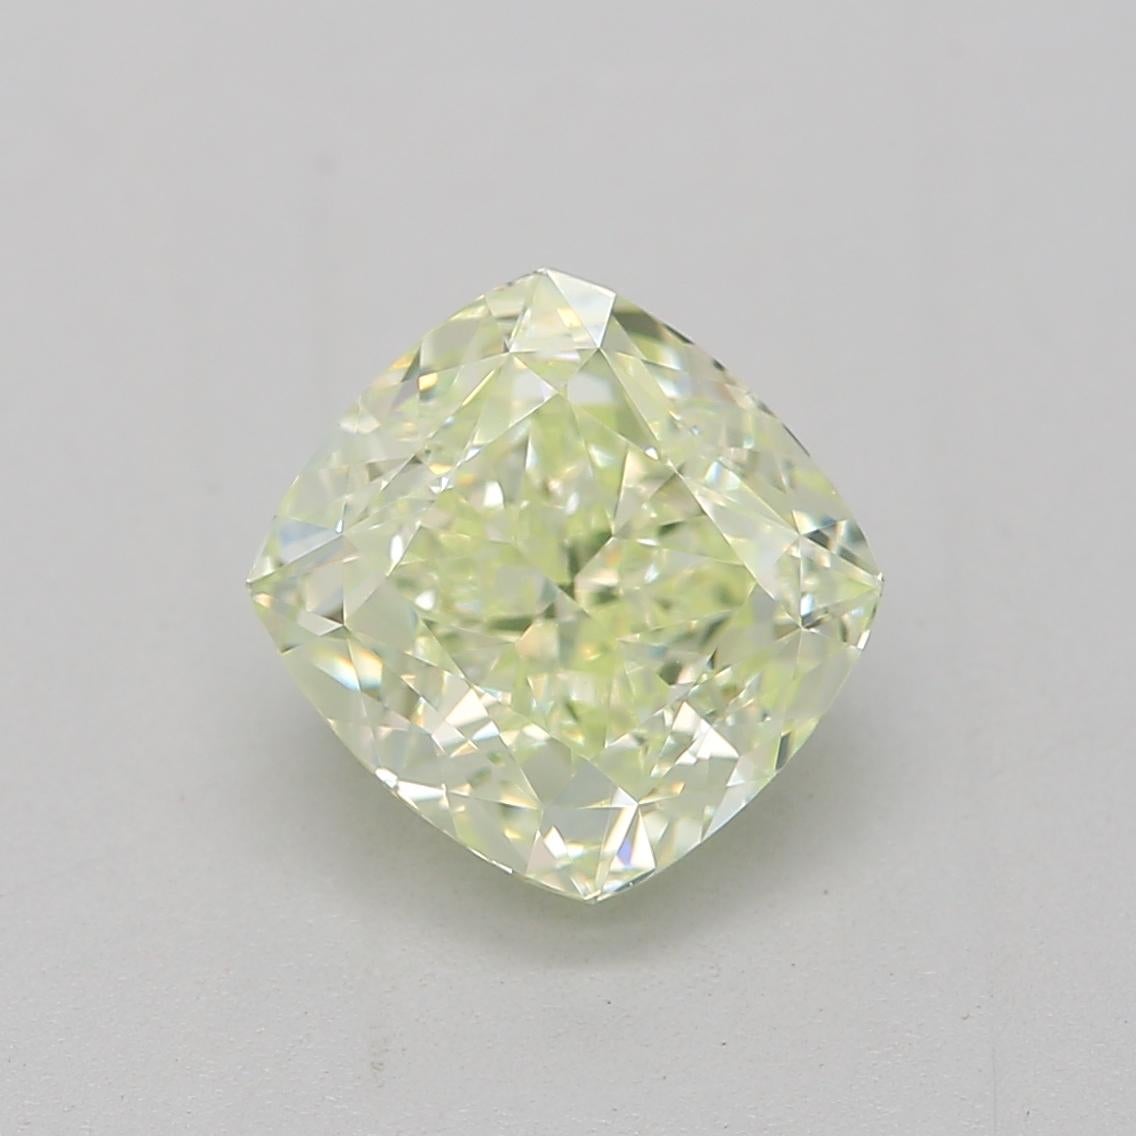 **100% NATÜRLICHE FANCY-FARBDIAMANTEN**

Diamant Details

➛ Form: Kissen
➛ Farbsorte: Fancy Hellgelb Grün
➛ Karat: 1.00
➛ Klarheit: IF
➛ GIA zertifiziert 

^MERKMALE DES DIAMANTEN^

Dieser 1-Karat-Diamant im Kissenschliff ist ein quadratischer oder